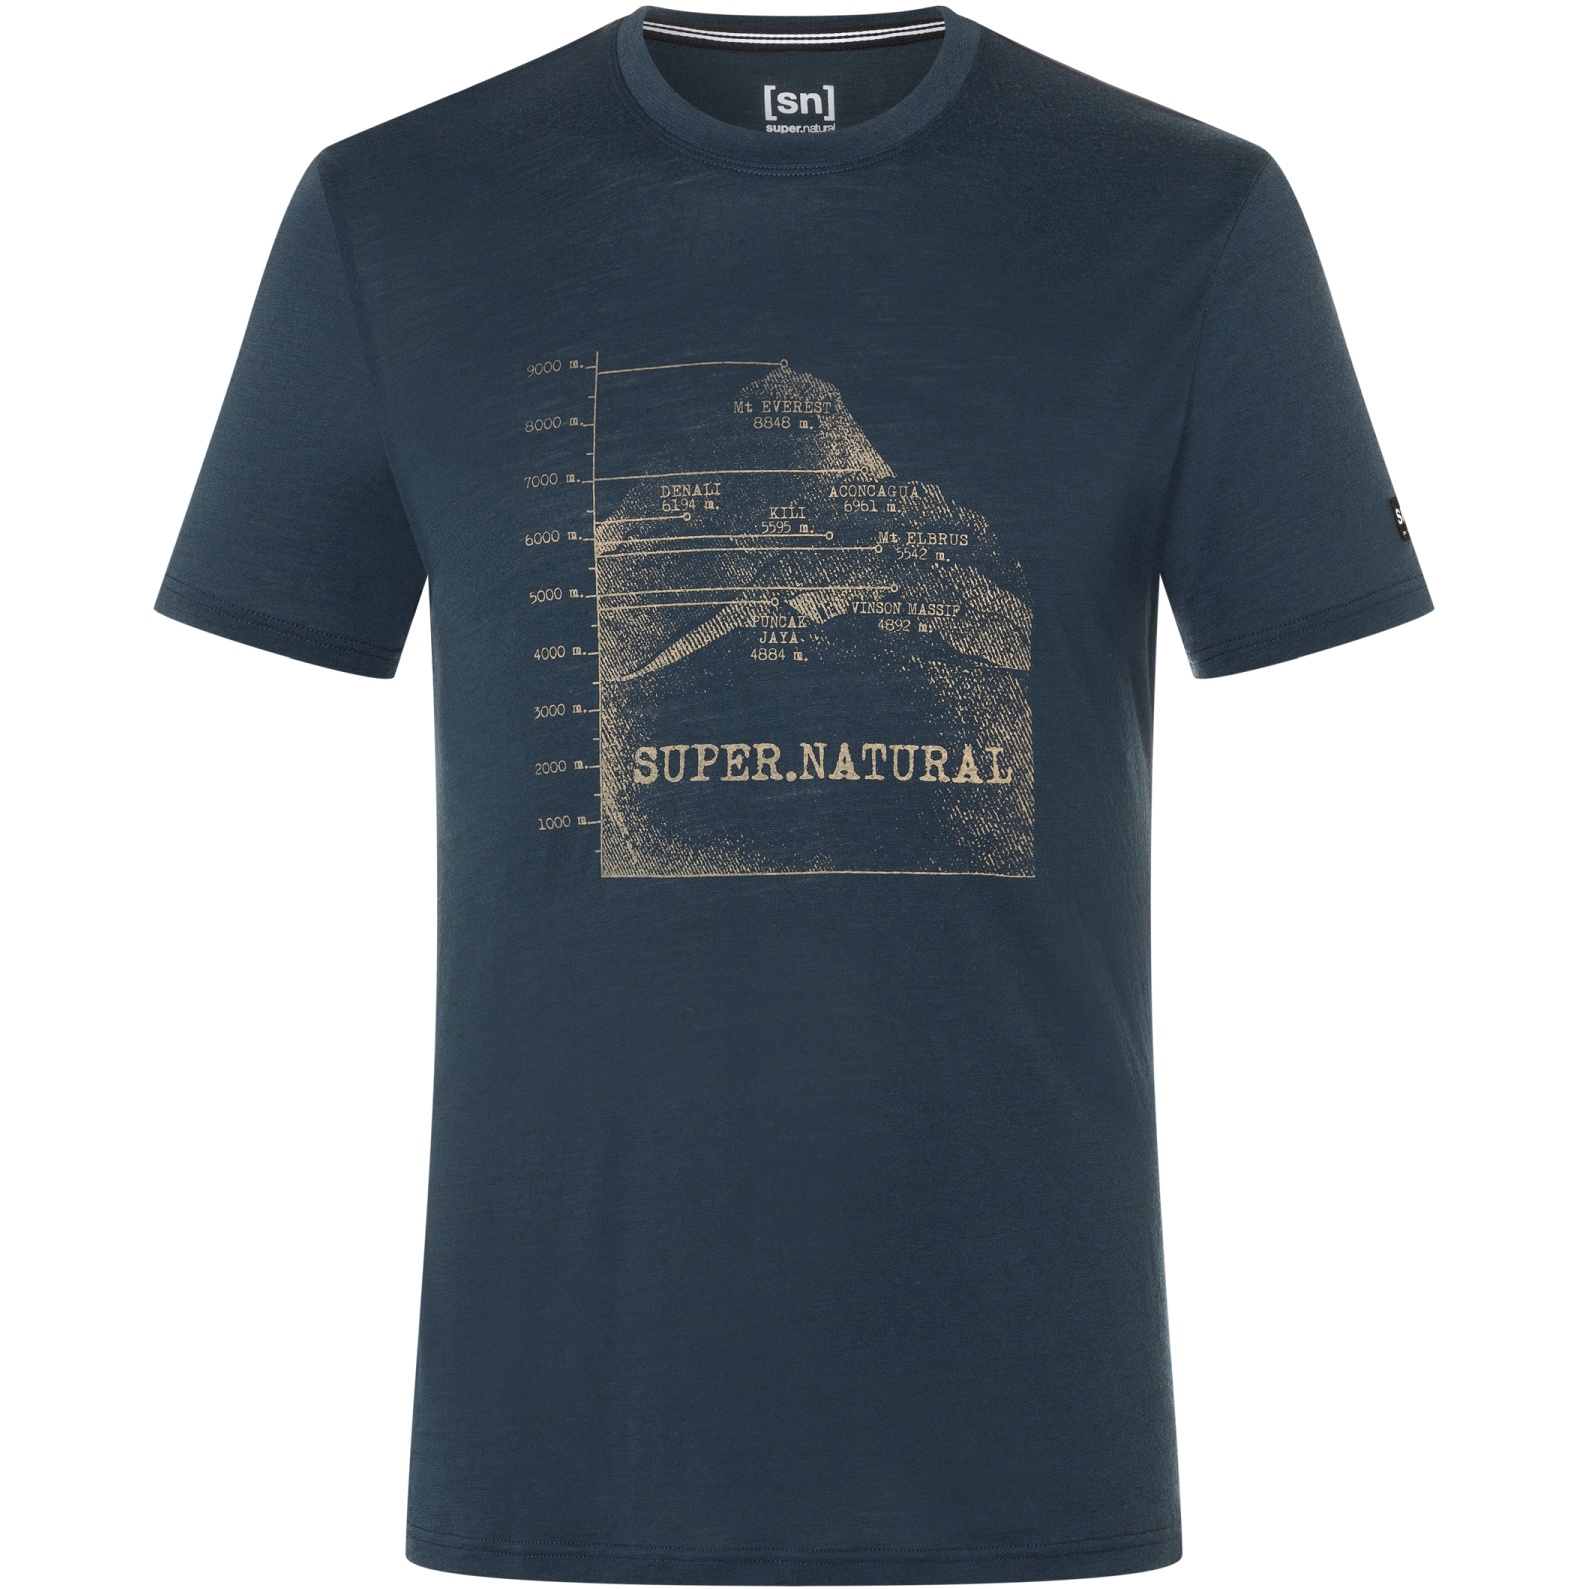 Produktbild von SUPER.NATURAL 7 Peaks T-Shirt Herren - Blueberry/Oak